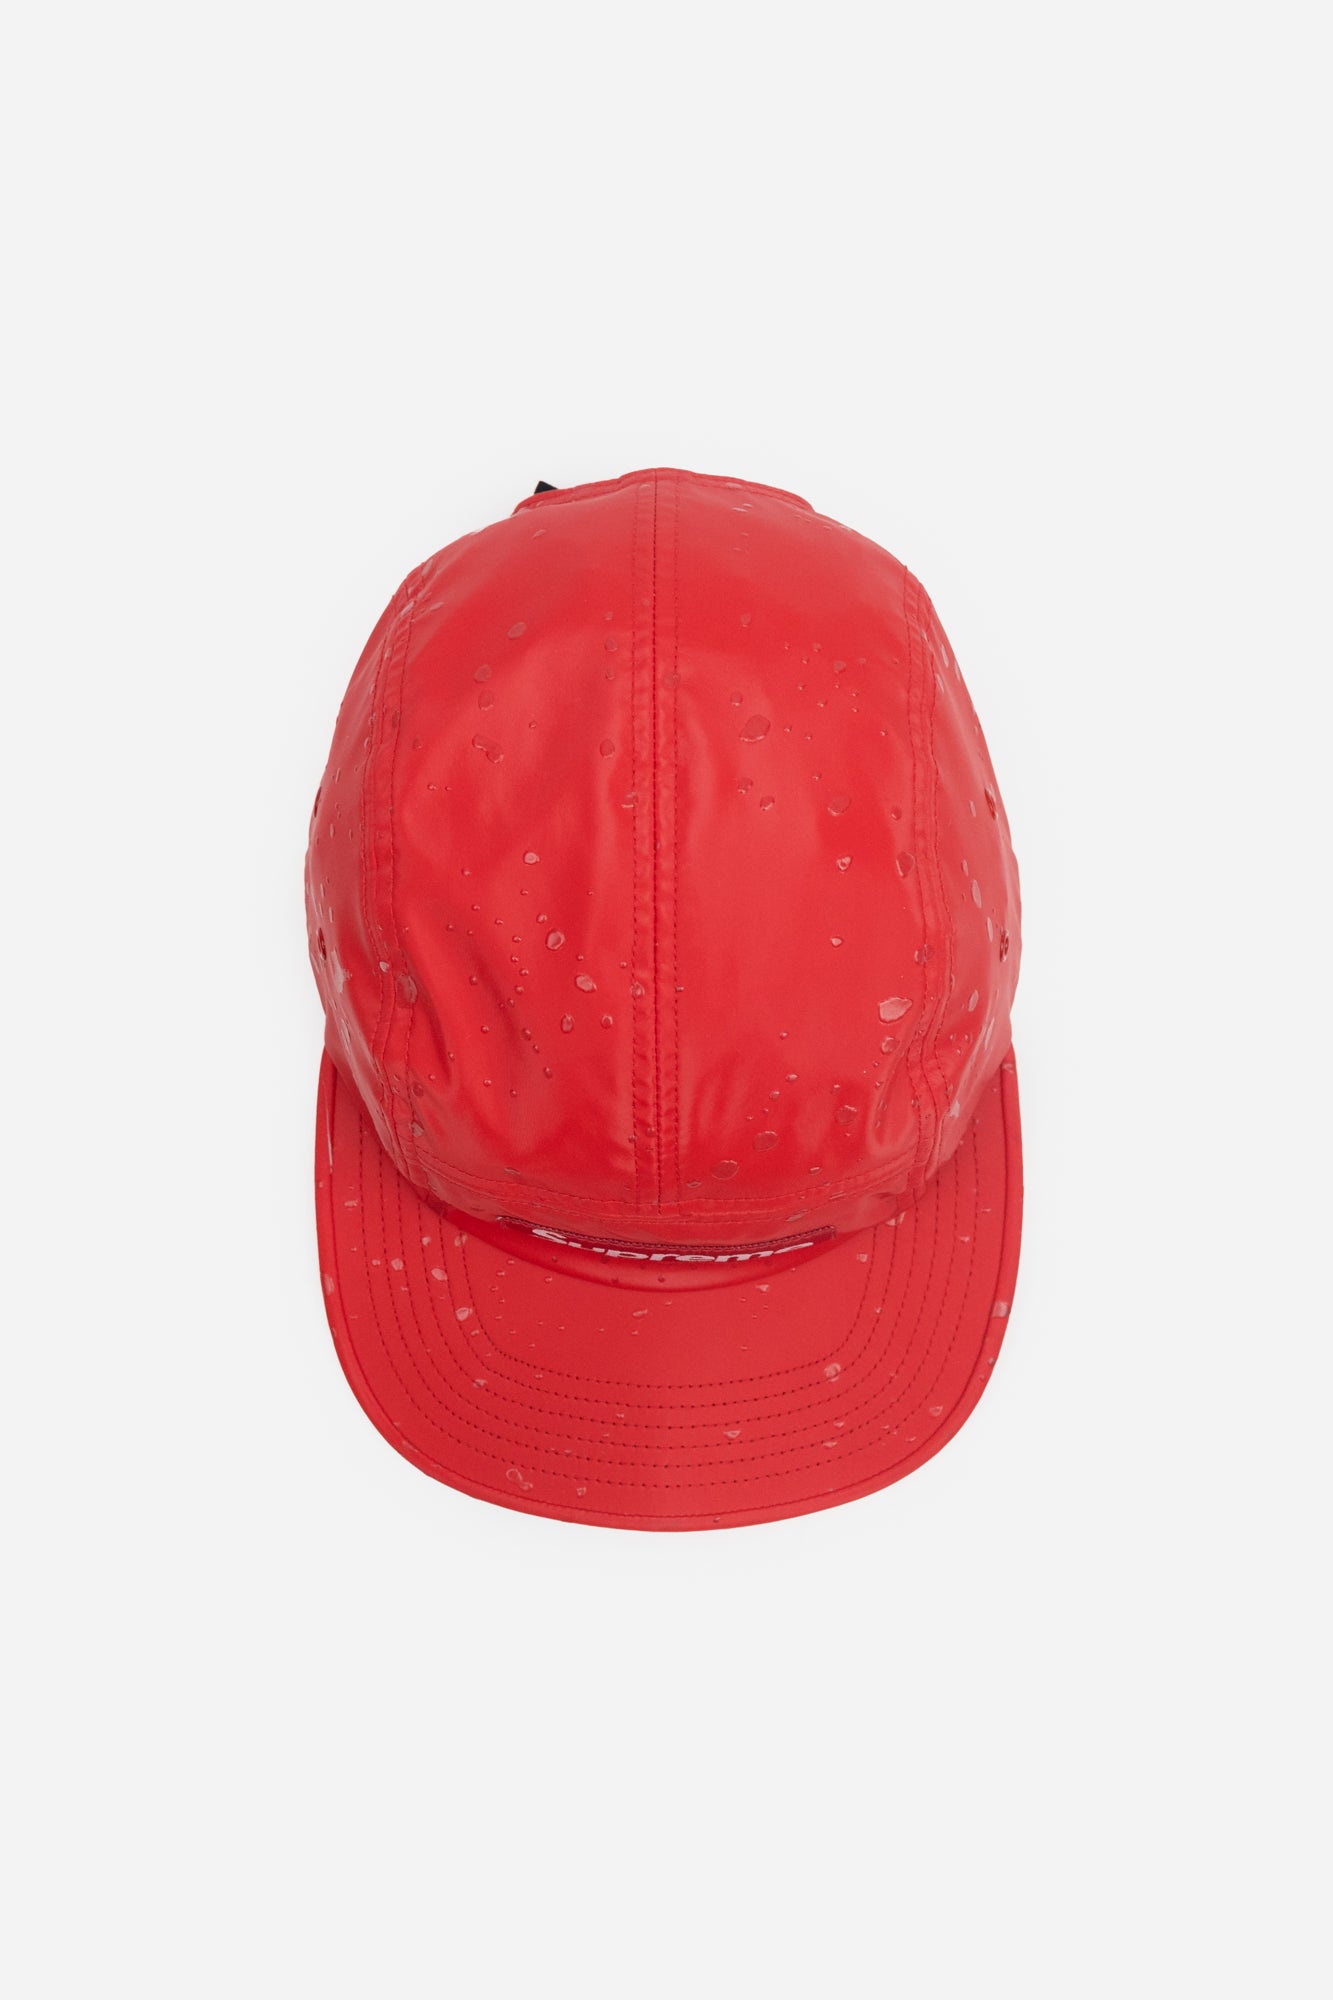 Adjustable Red Supreme Splatter Flat Brim Cap